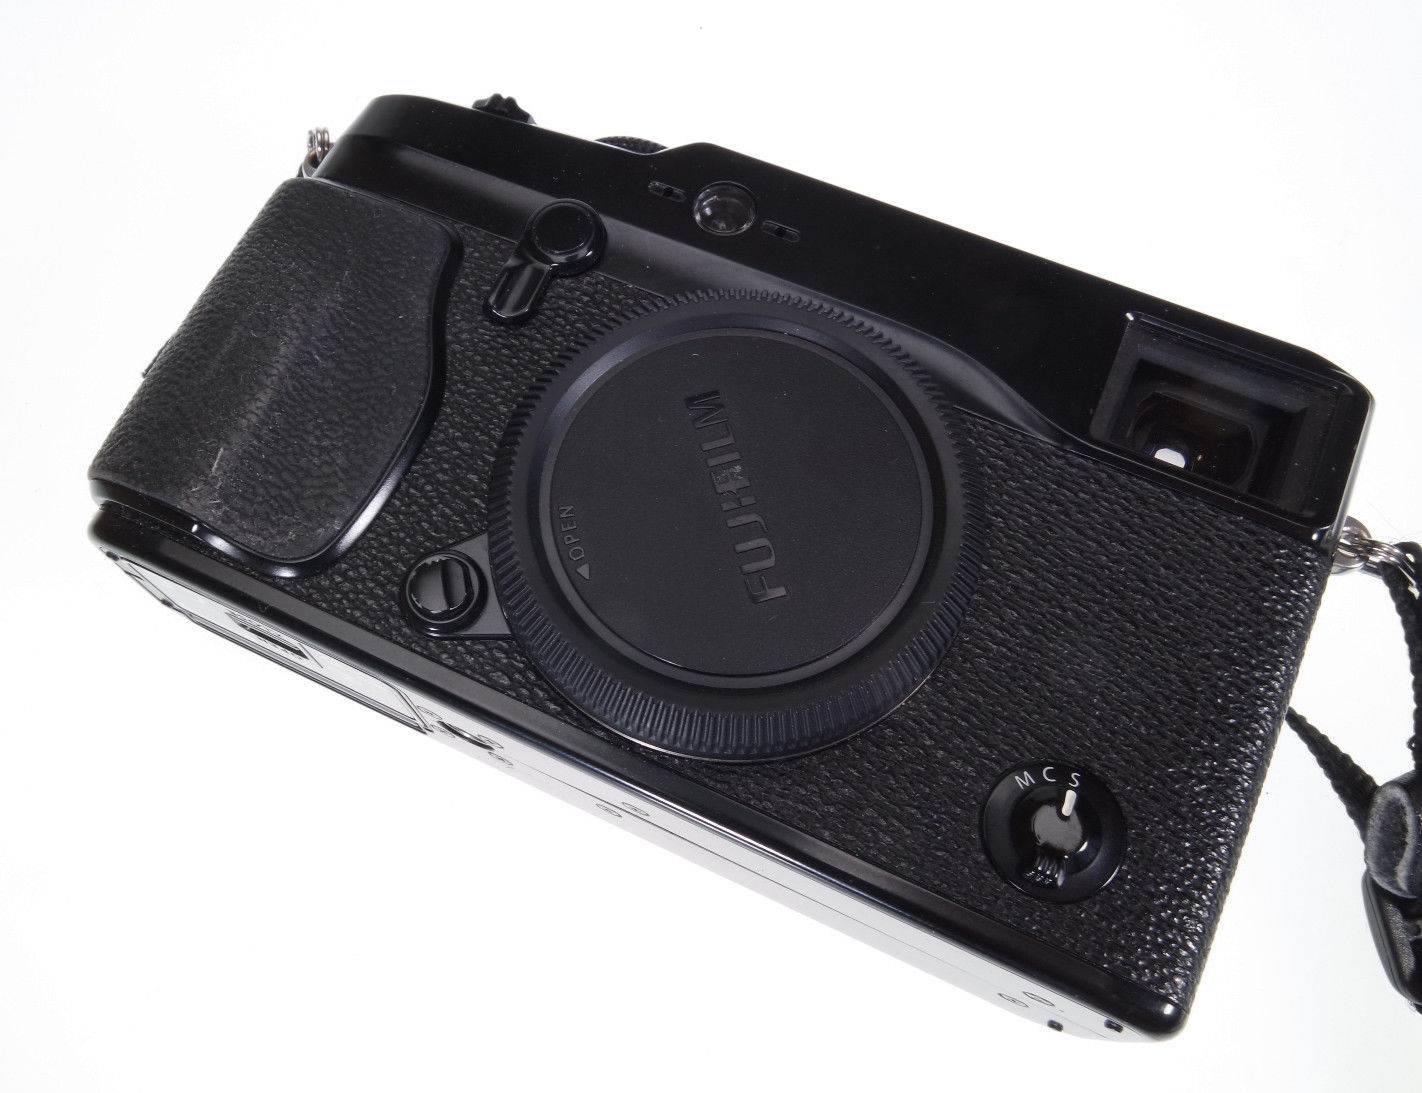 Fujifilm x-pro1 in gutem Zustand mit etwa 6500 Auslösungen. 